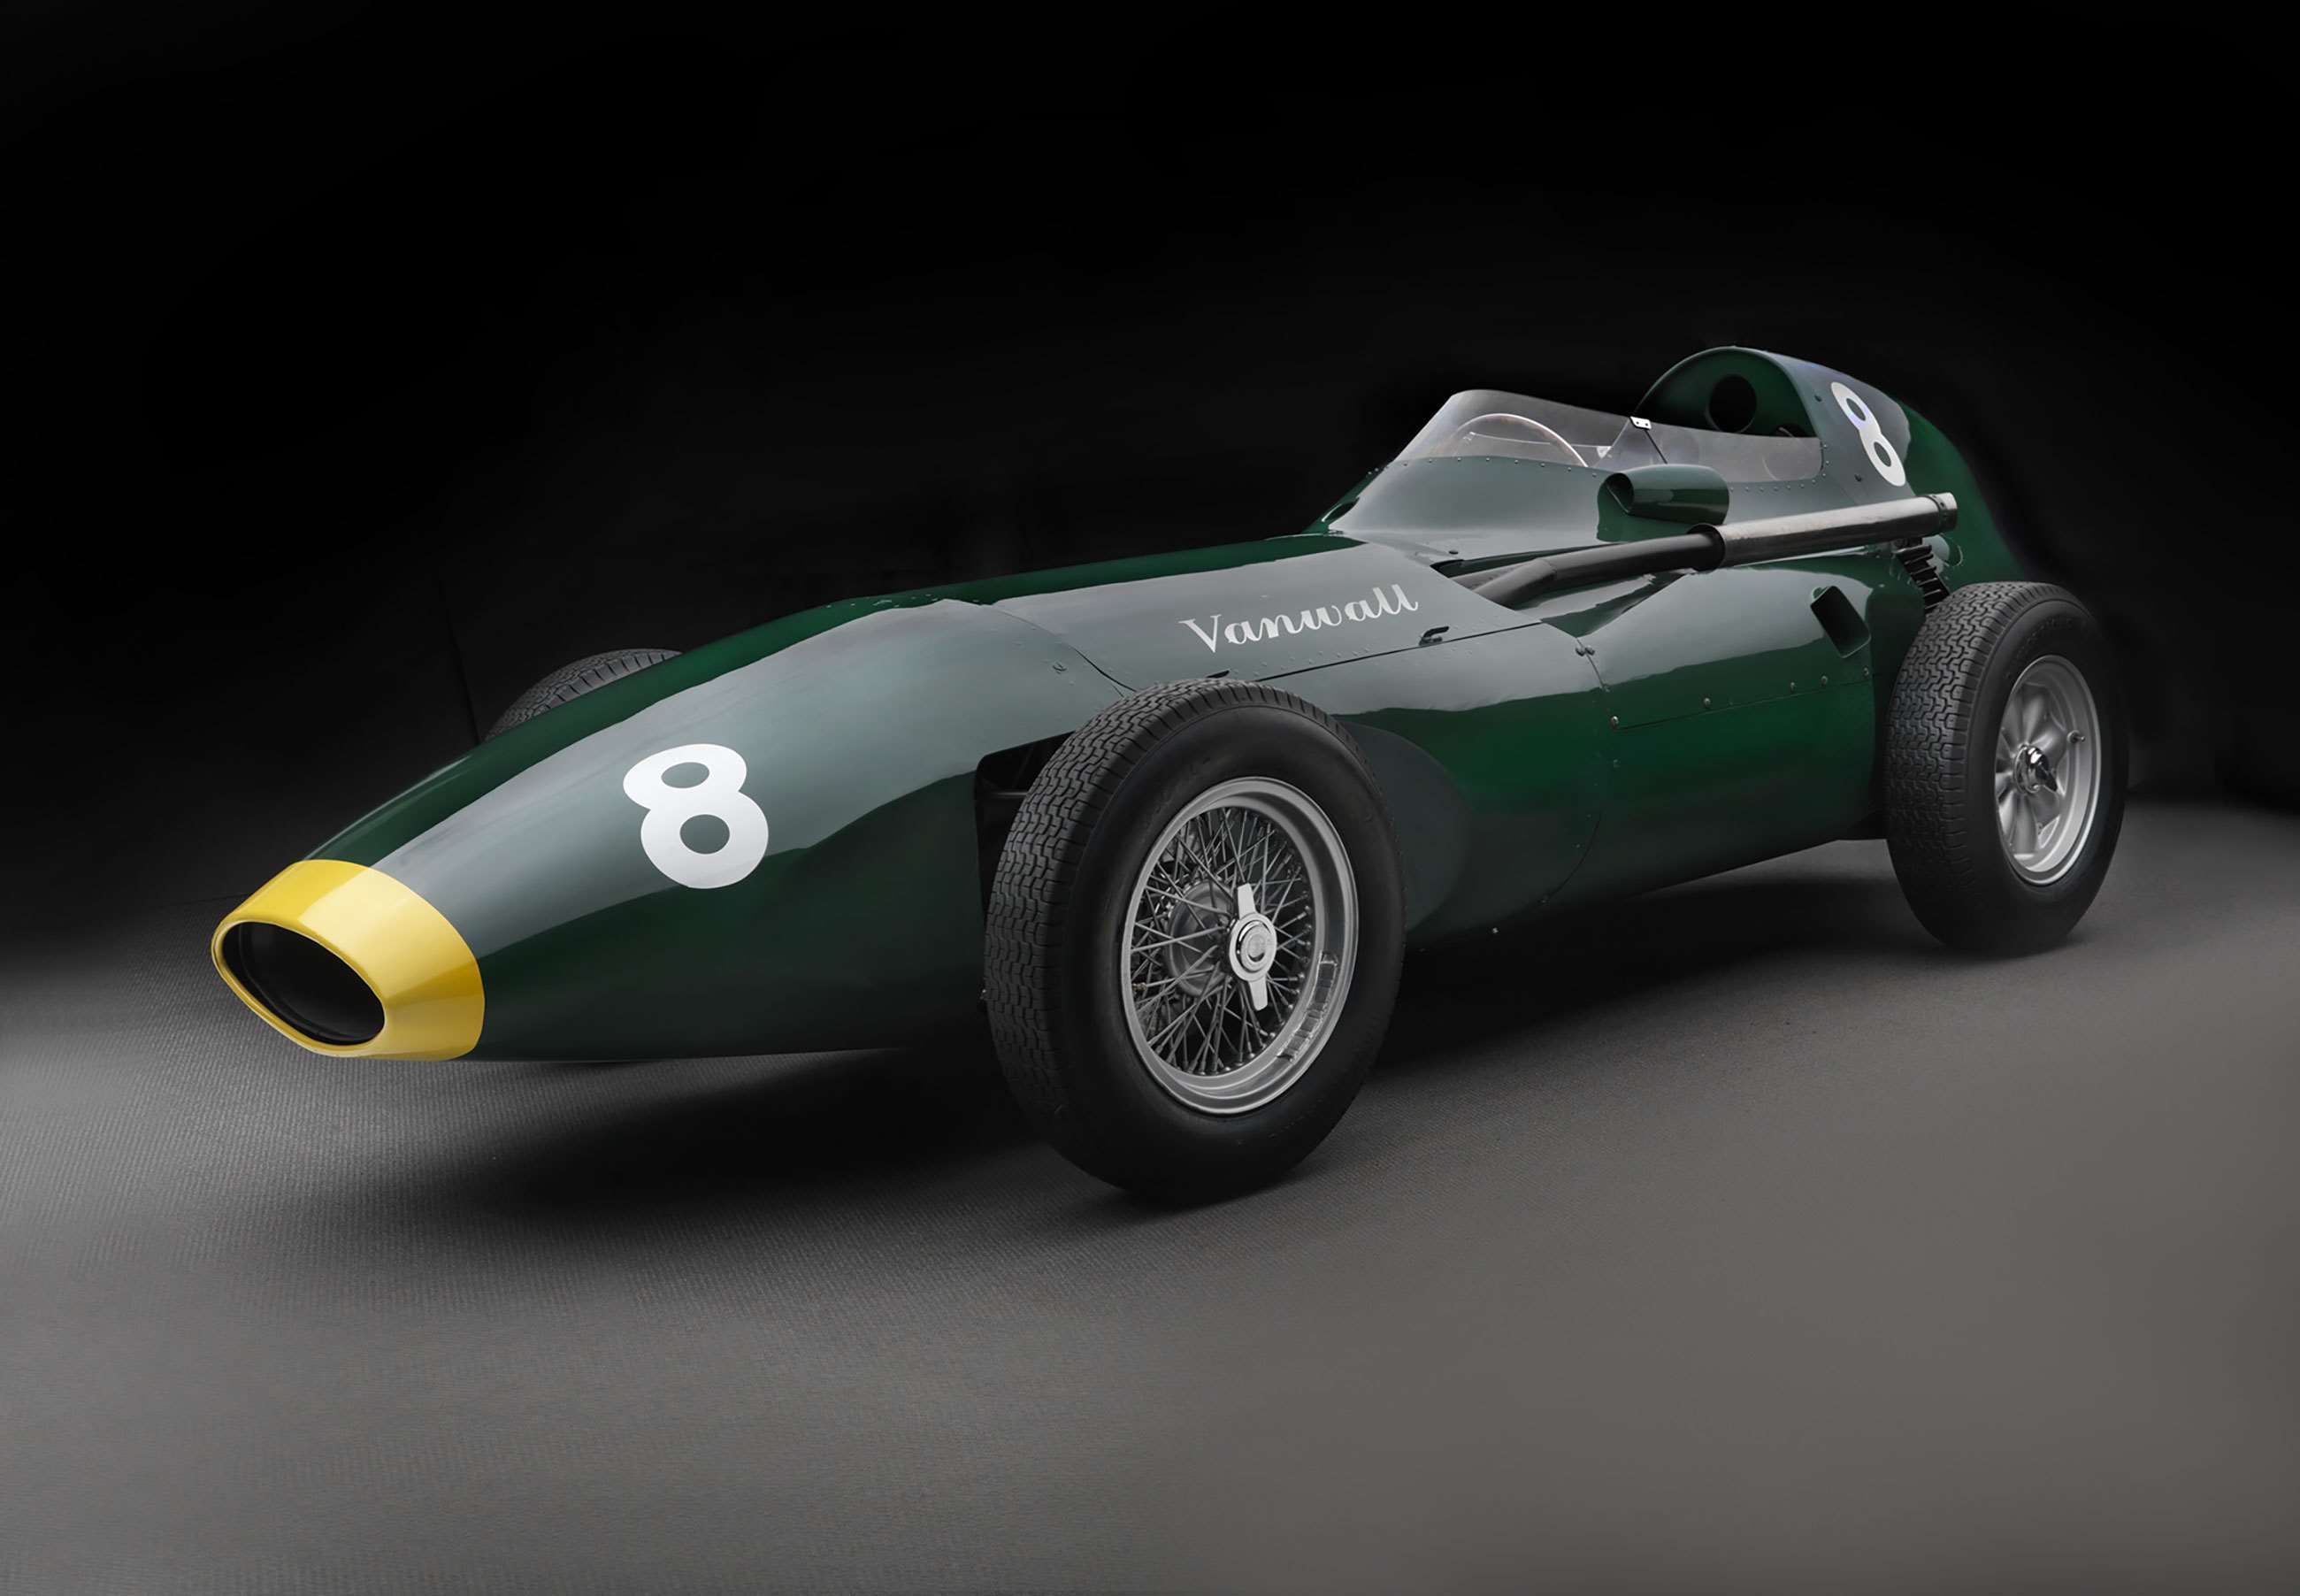 vanwall-formula-1-1958-goodwood-19102020.jpg